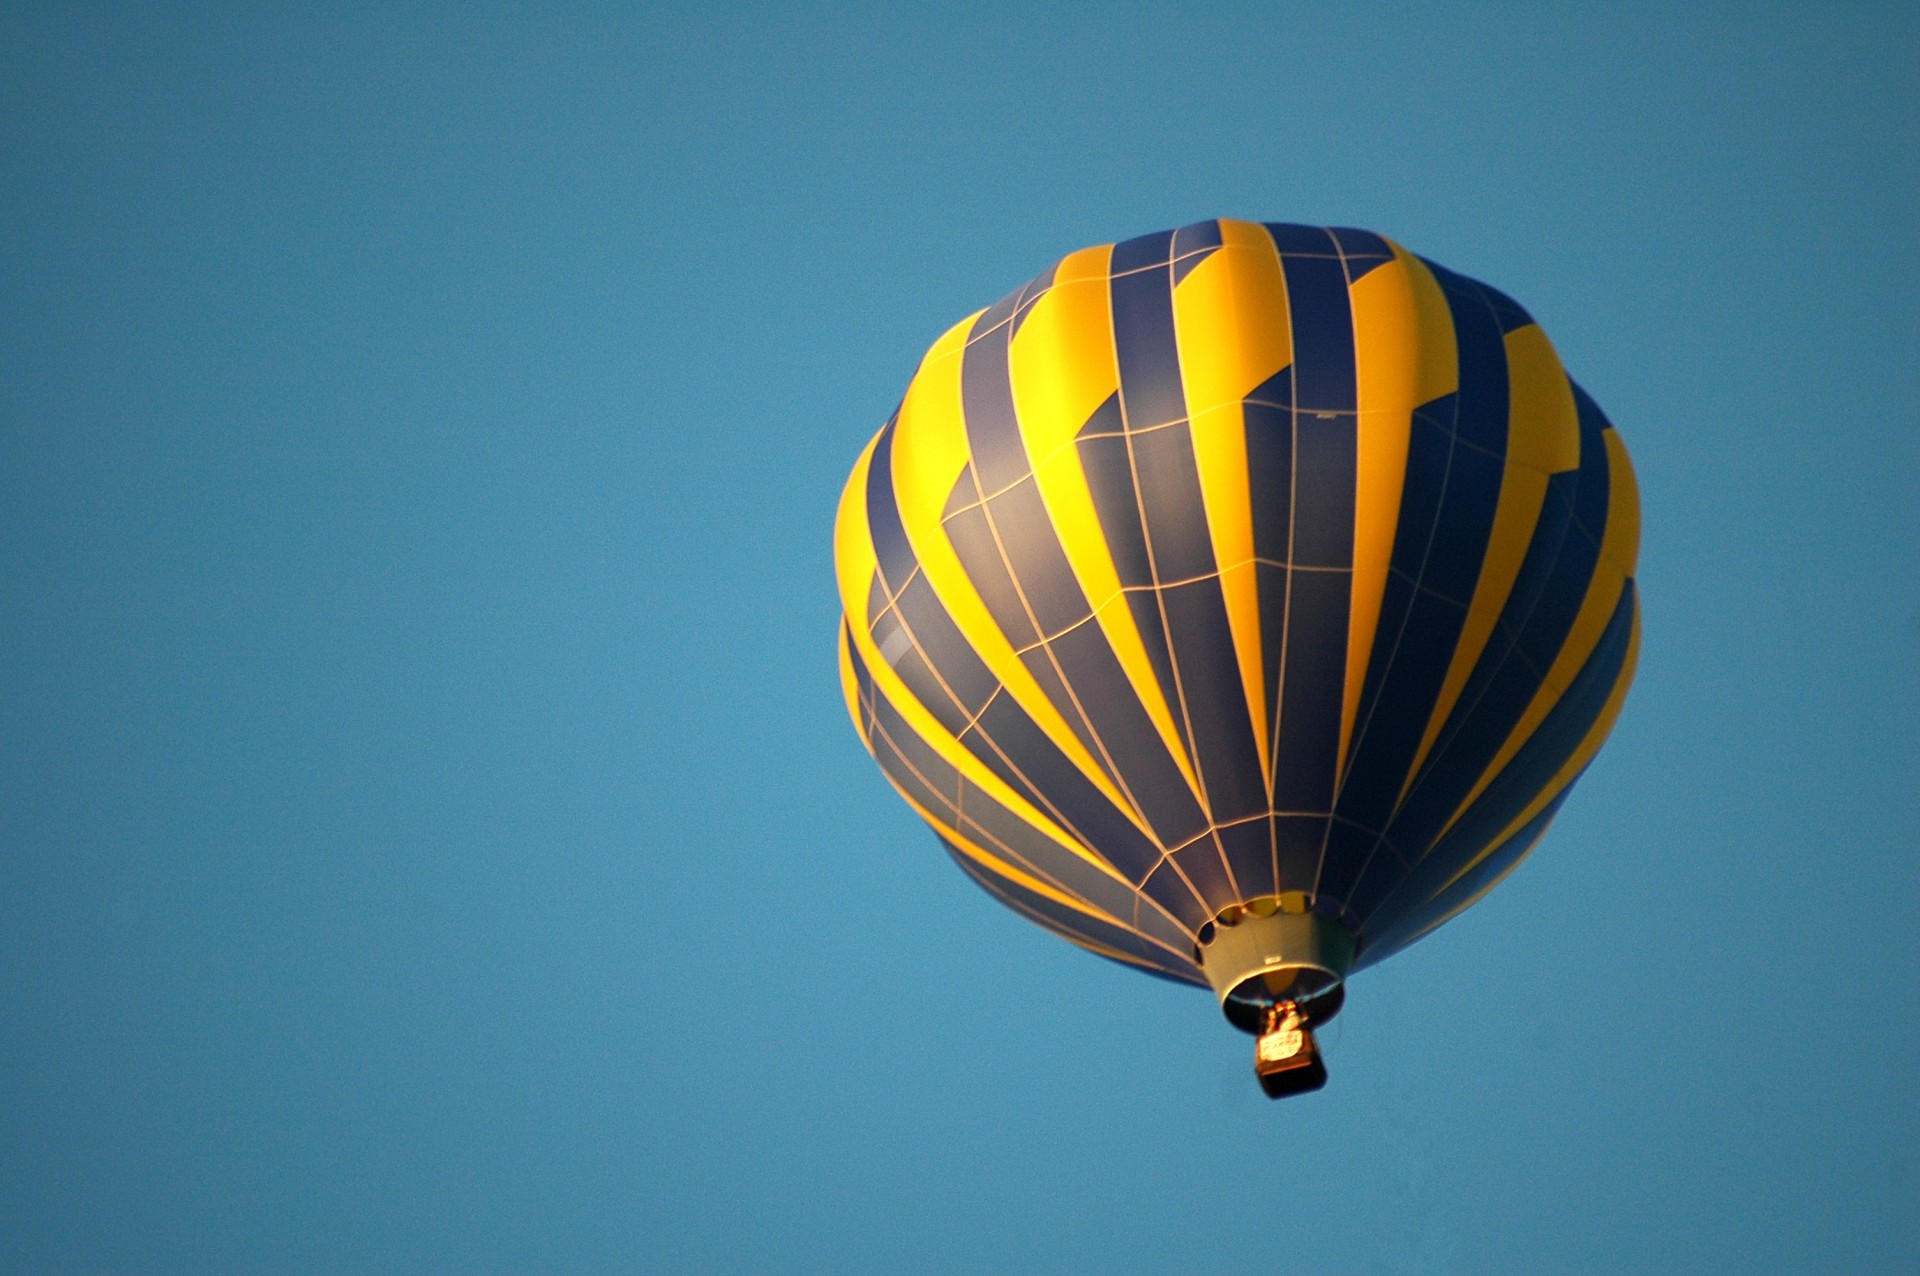 air balloon hot air flight free photo